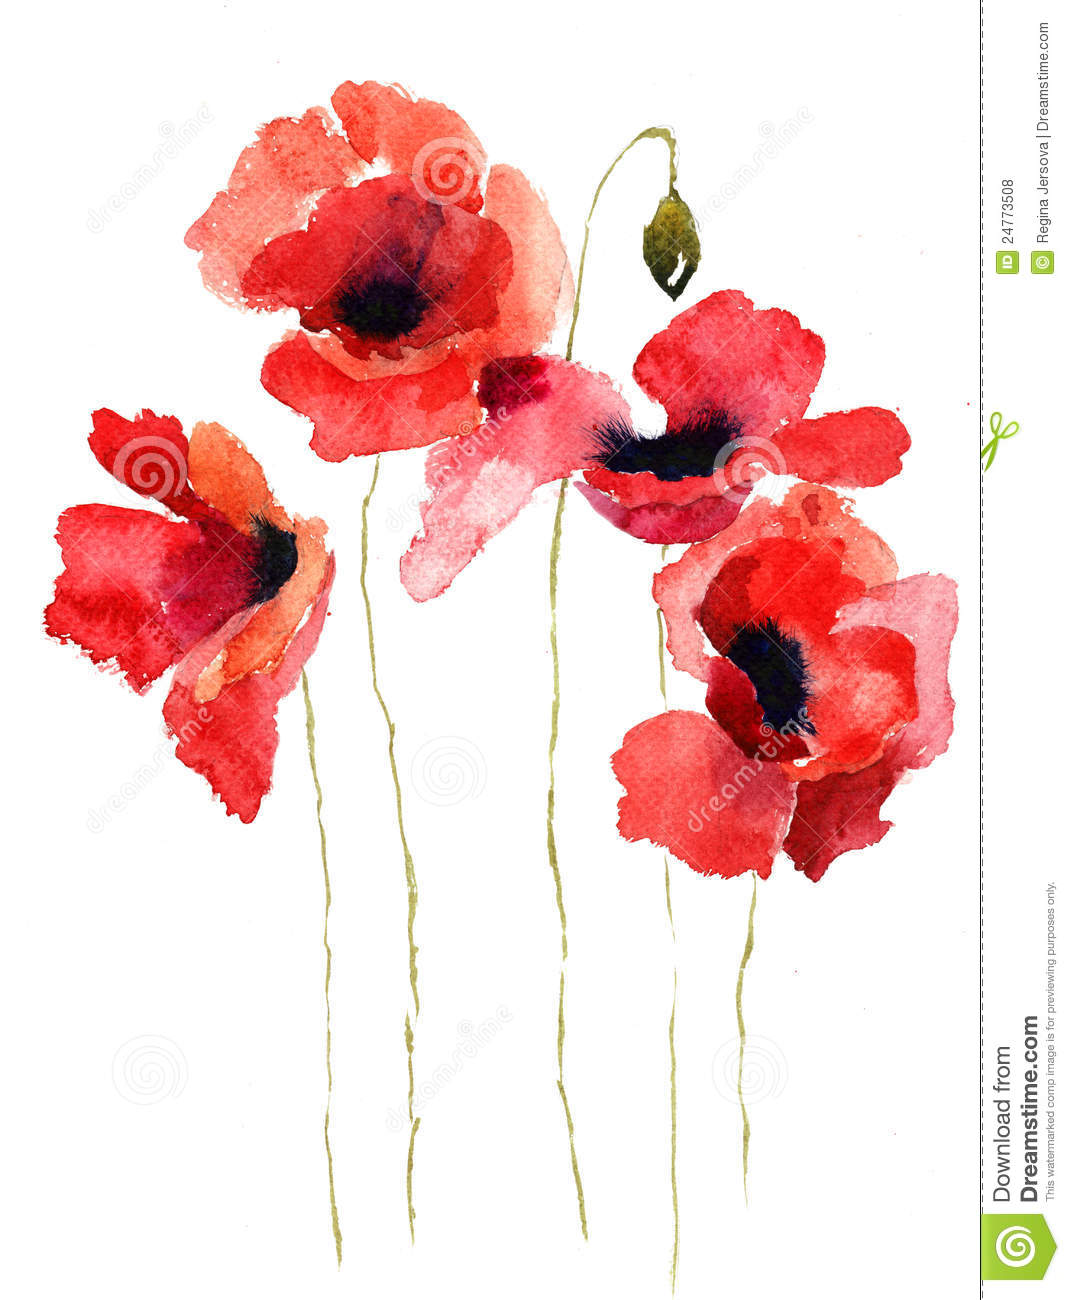 Poppy Flower Clip Art Stylized Poppy Flowers Illustration Royalty Free